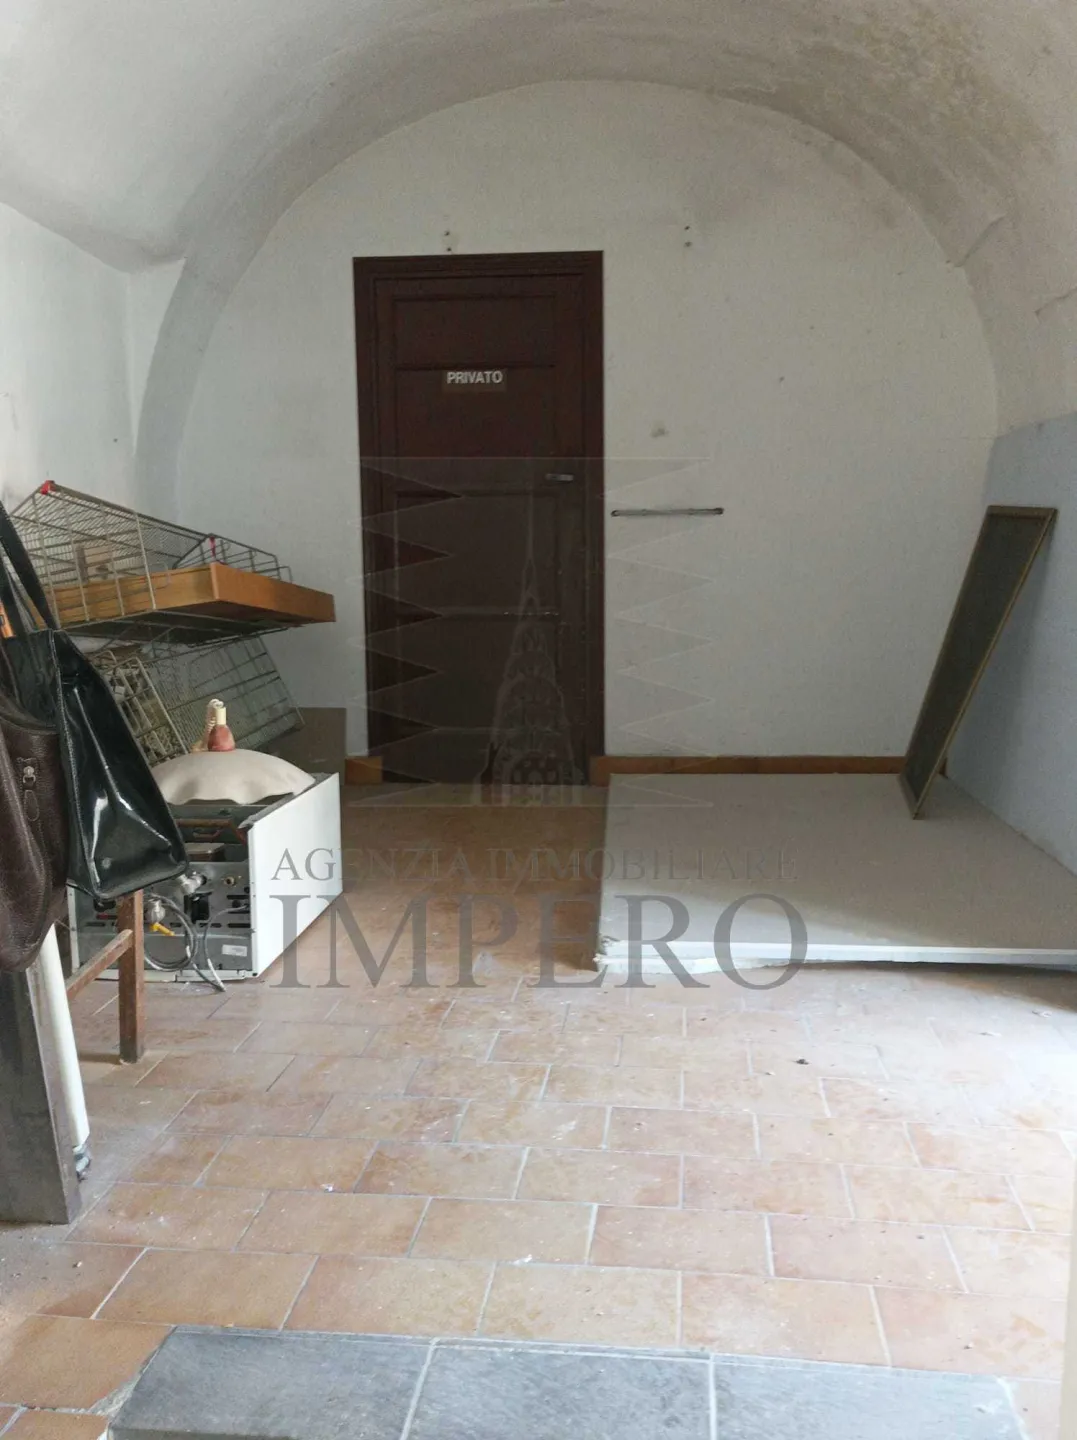 Immagine per Appartamento in vendita a Ventimiglia via Torri Superiore 5